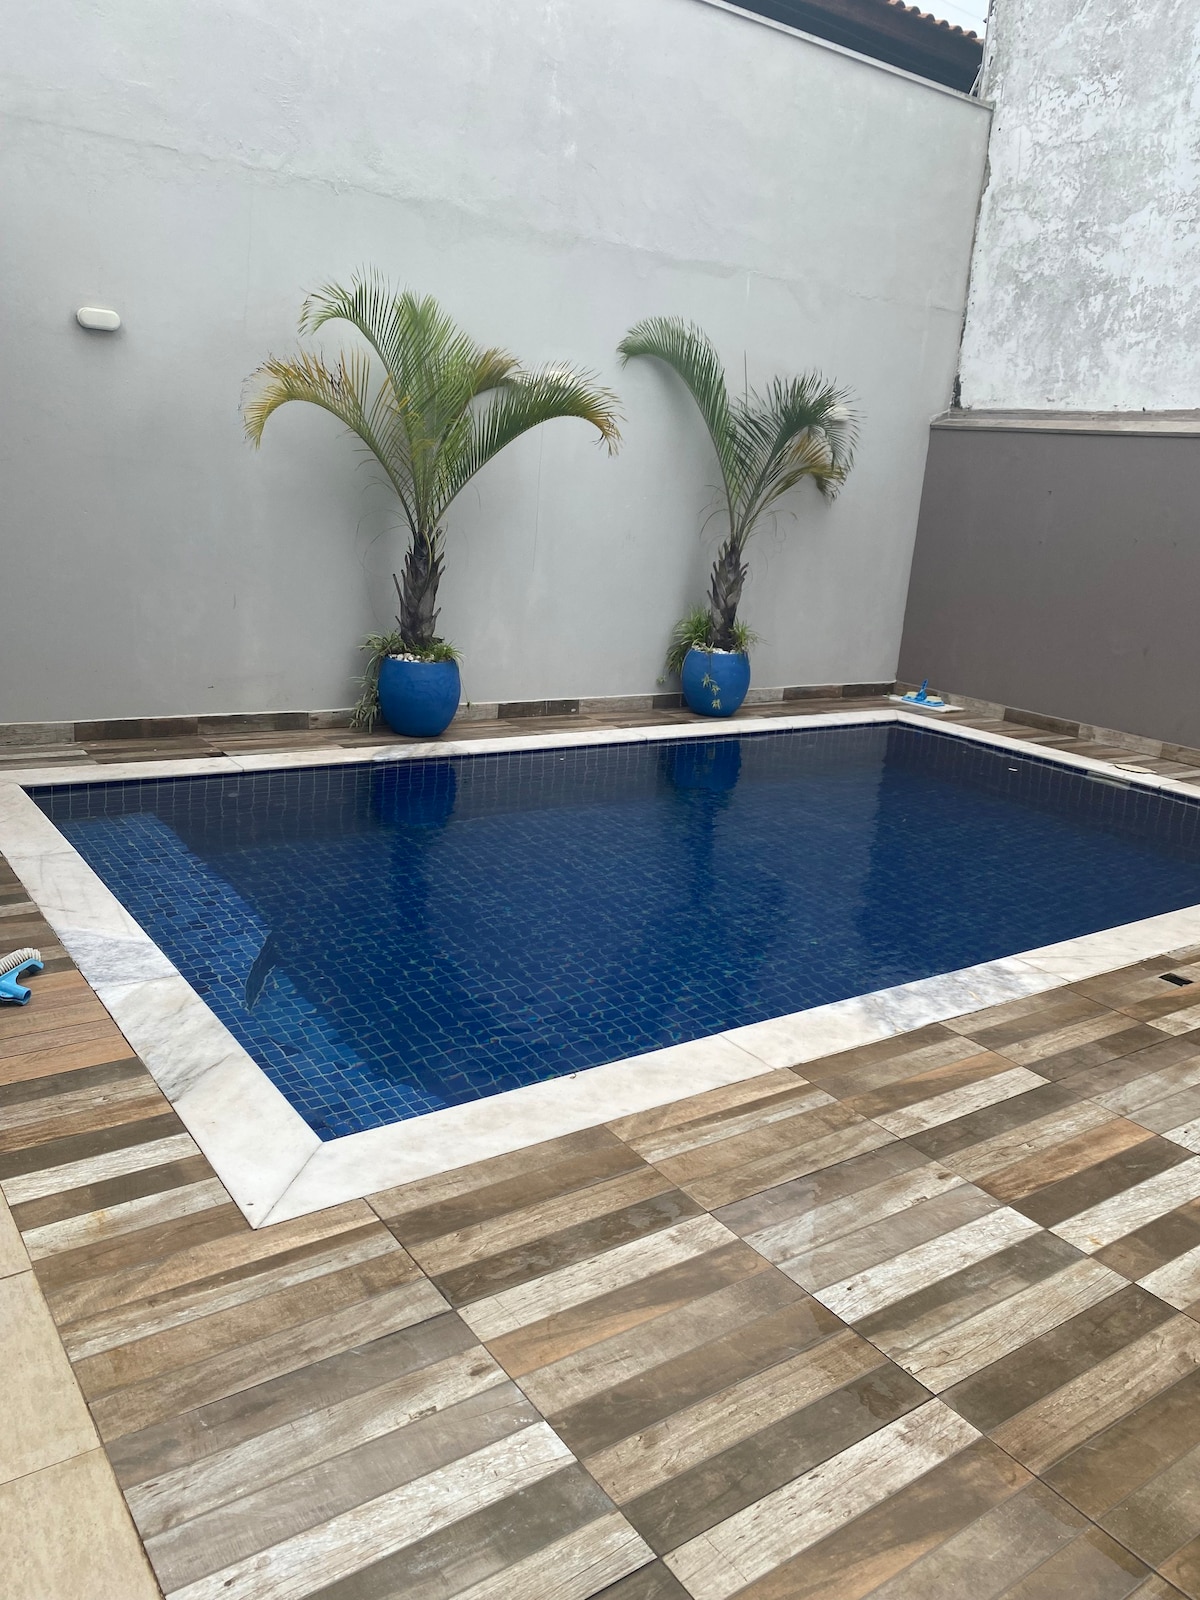 Casa piscina aquecida e ar condiciona em um quarto